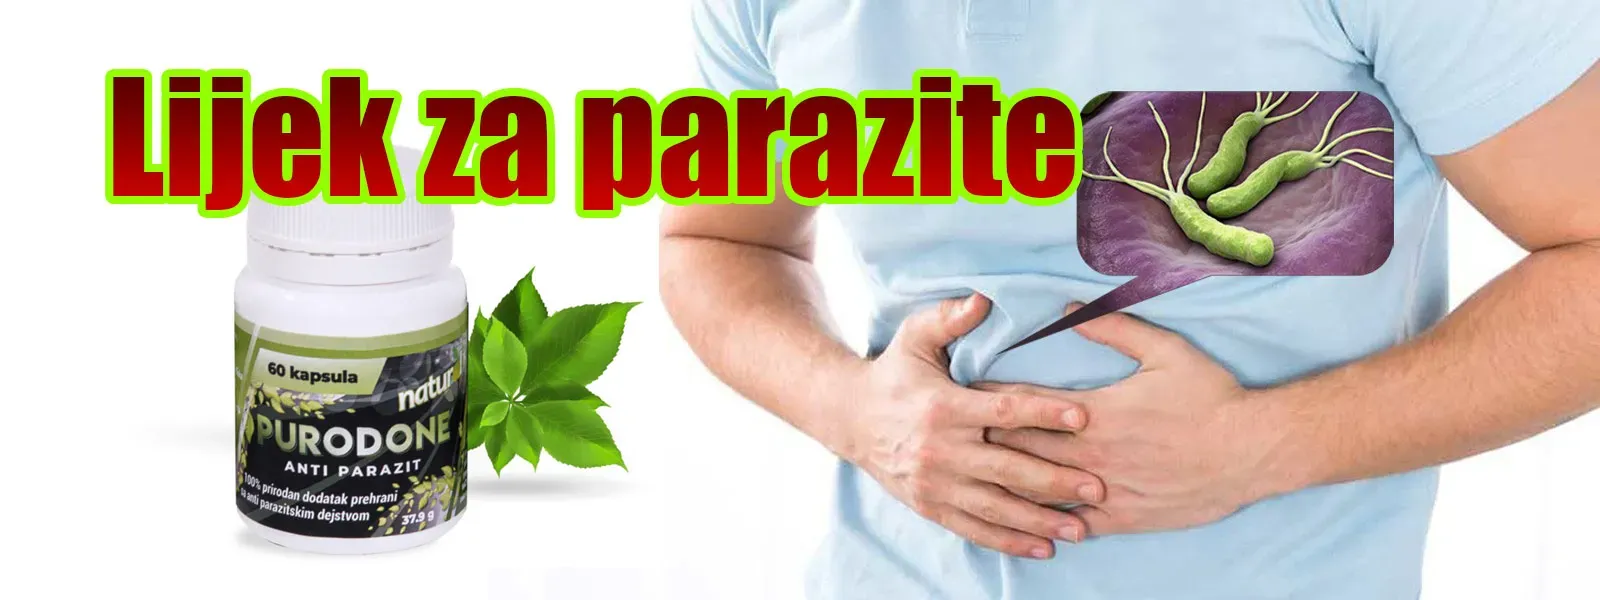 Parazax complex dove comprare, forum, recensioni, prezzo, Italia, composizione, opinioni, in farmacia, sito ufficiale.